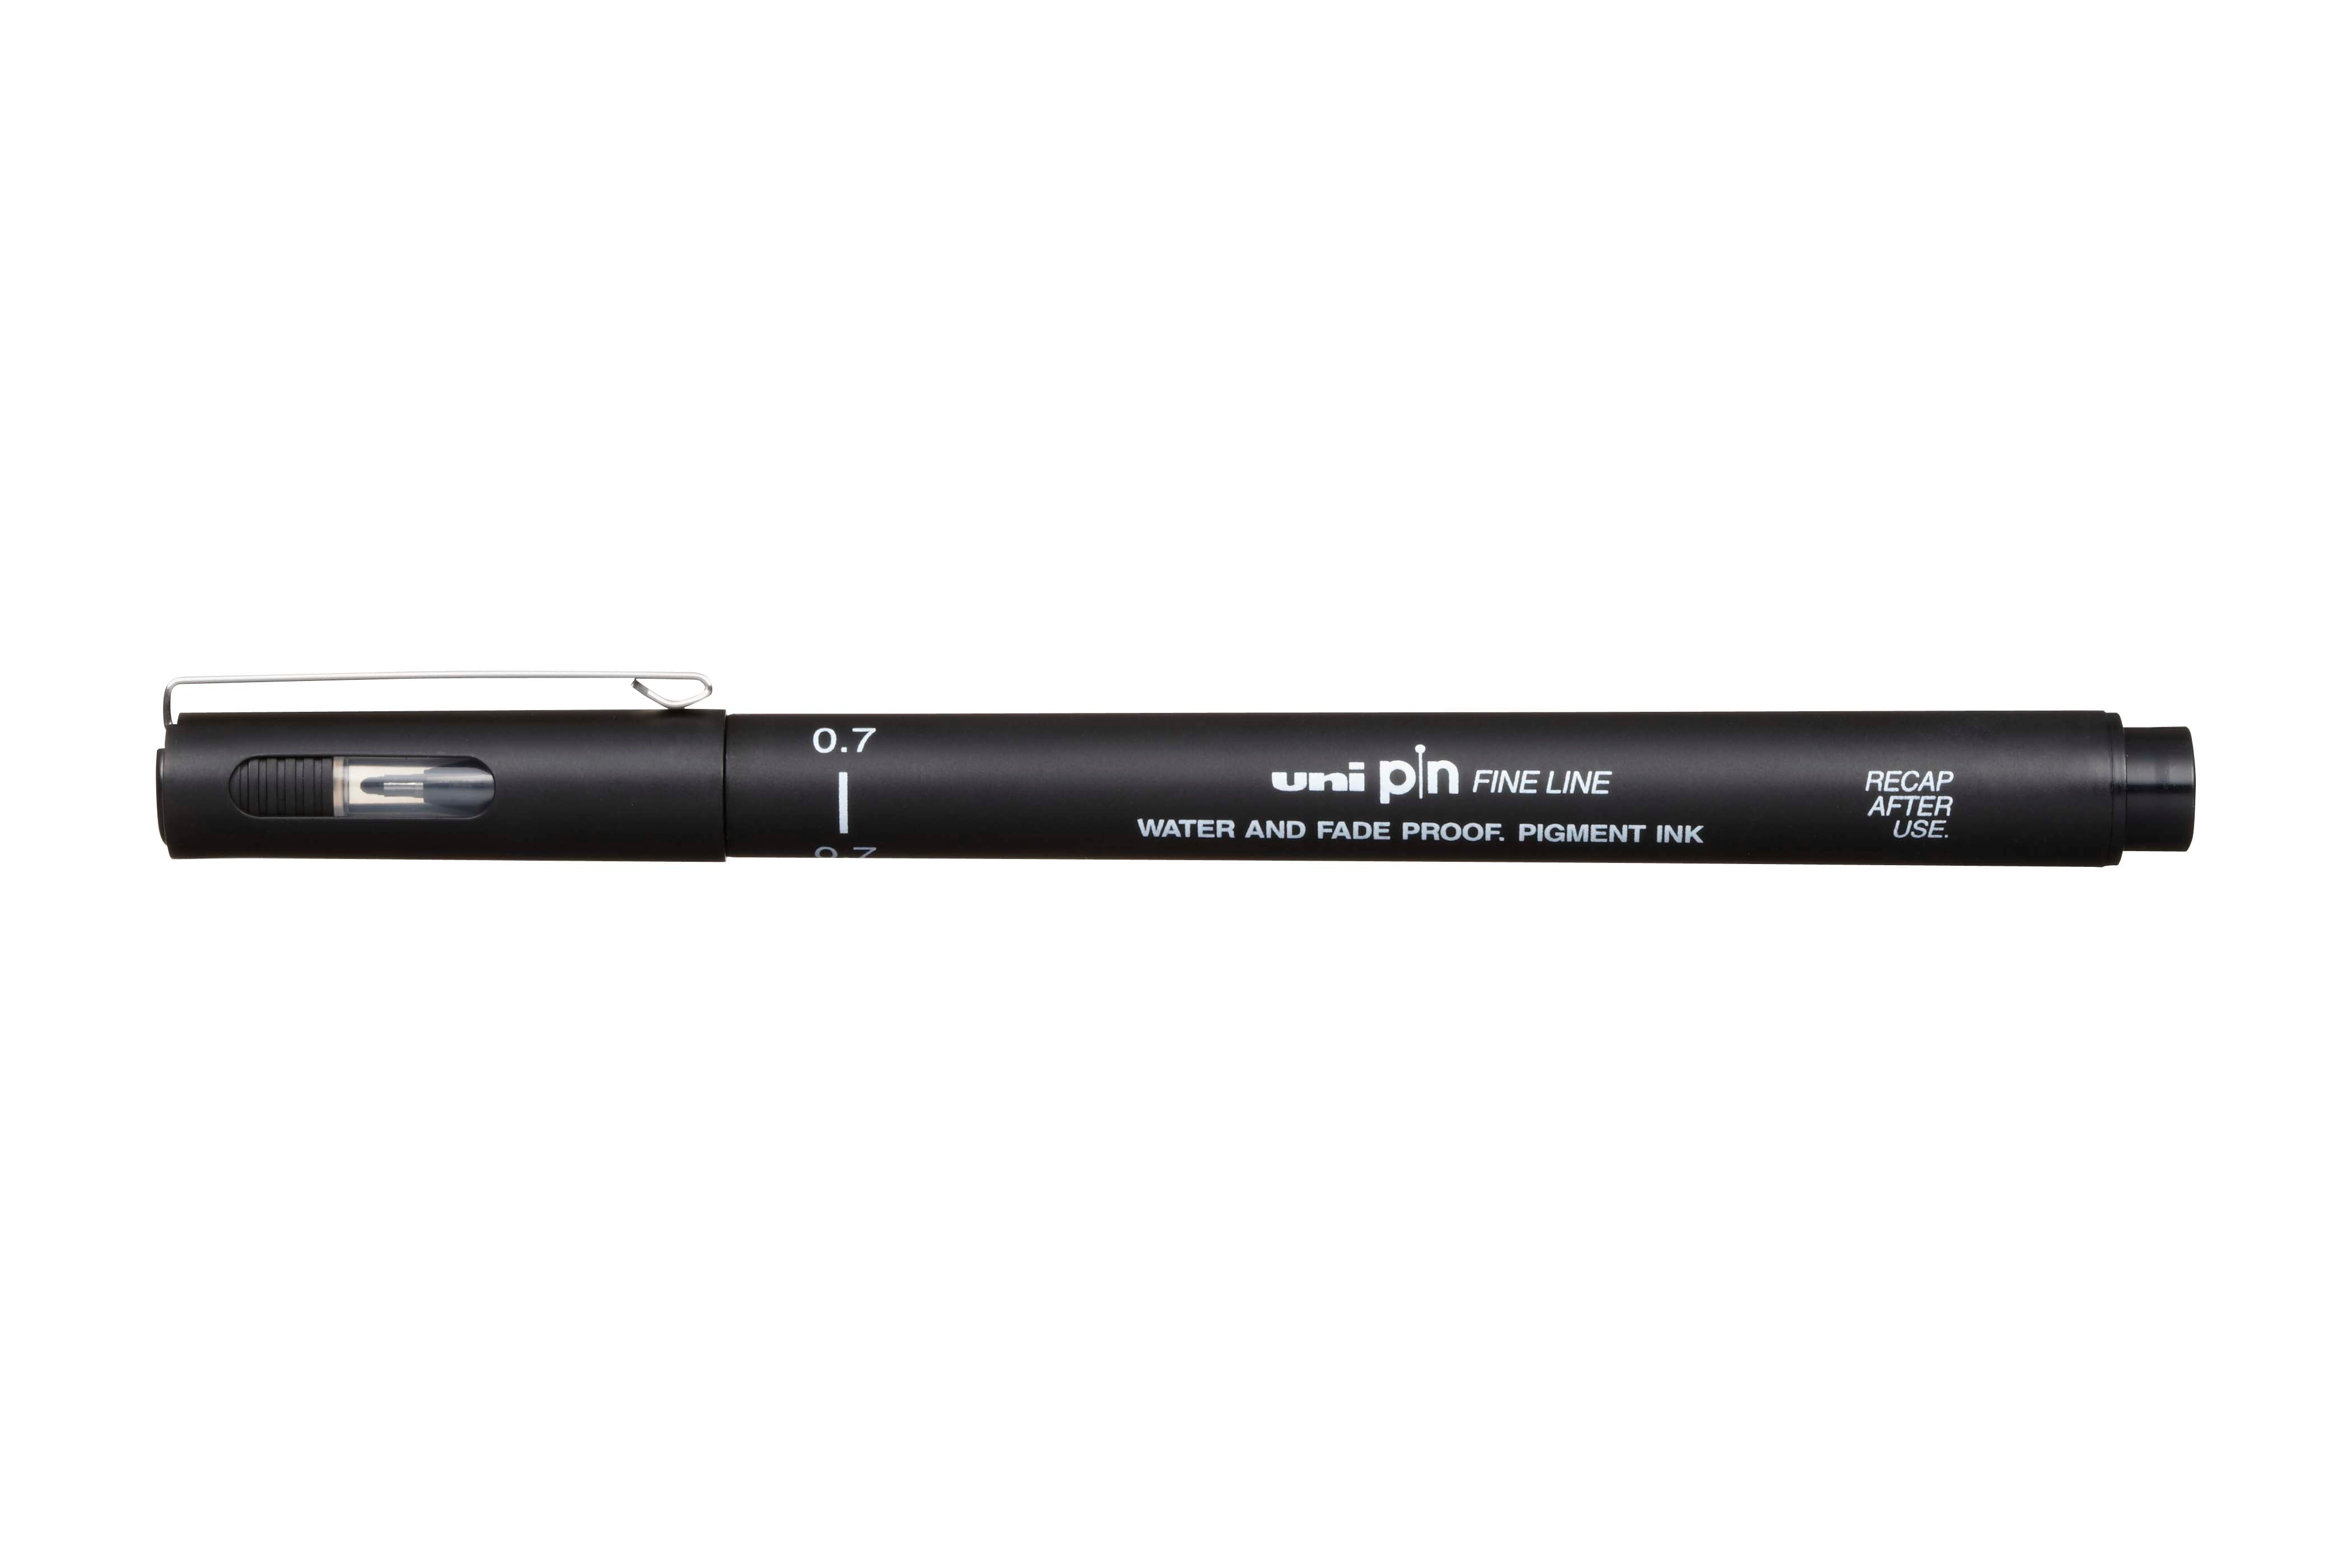 Uni pin waterproof black fineliner pen 